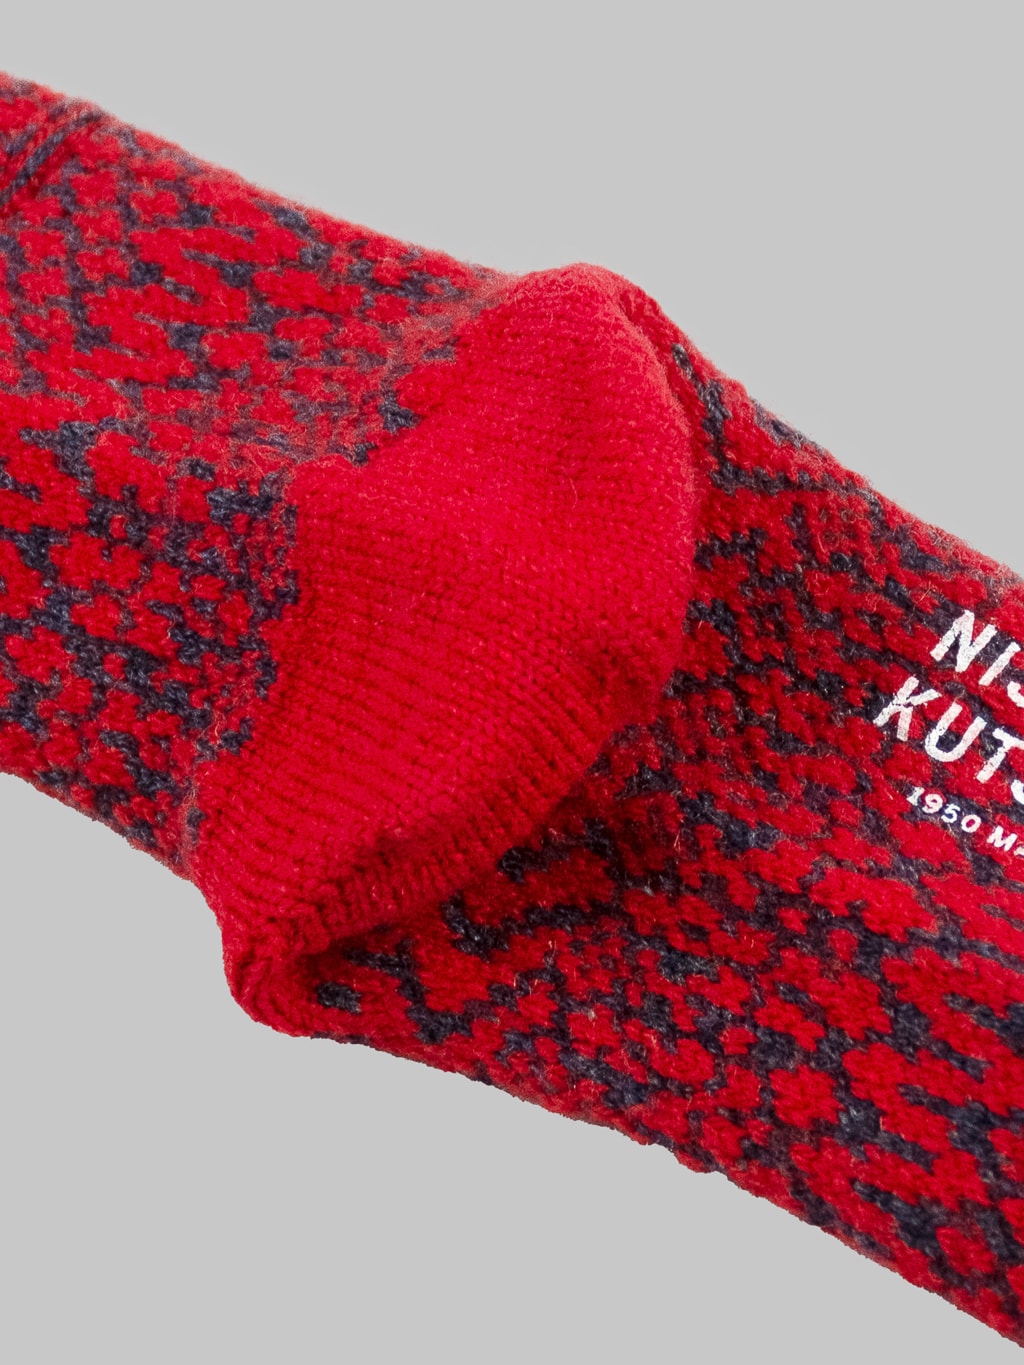 nishiguchi kutsushita oslo wool jacquard socks red heel